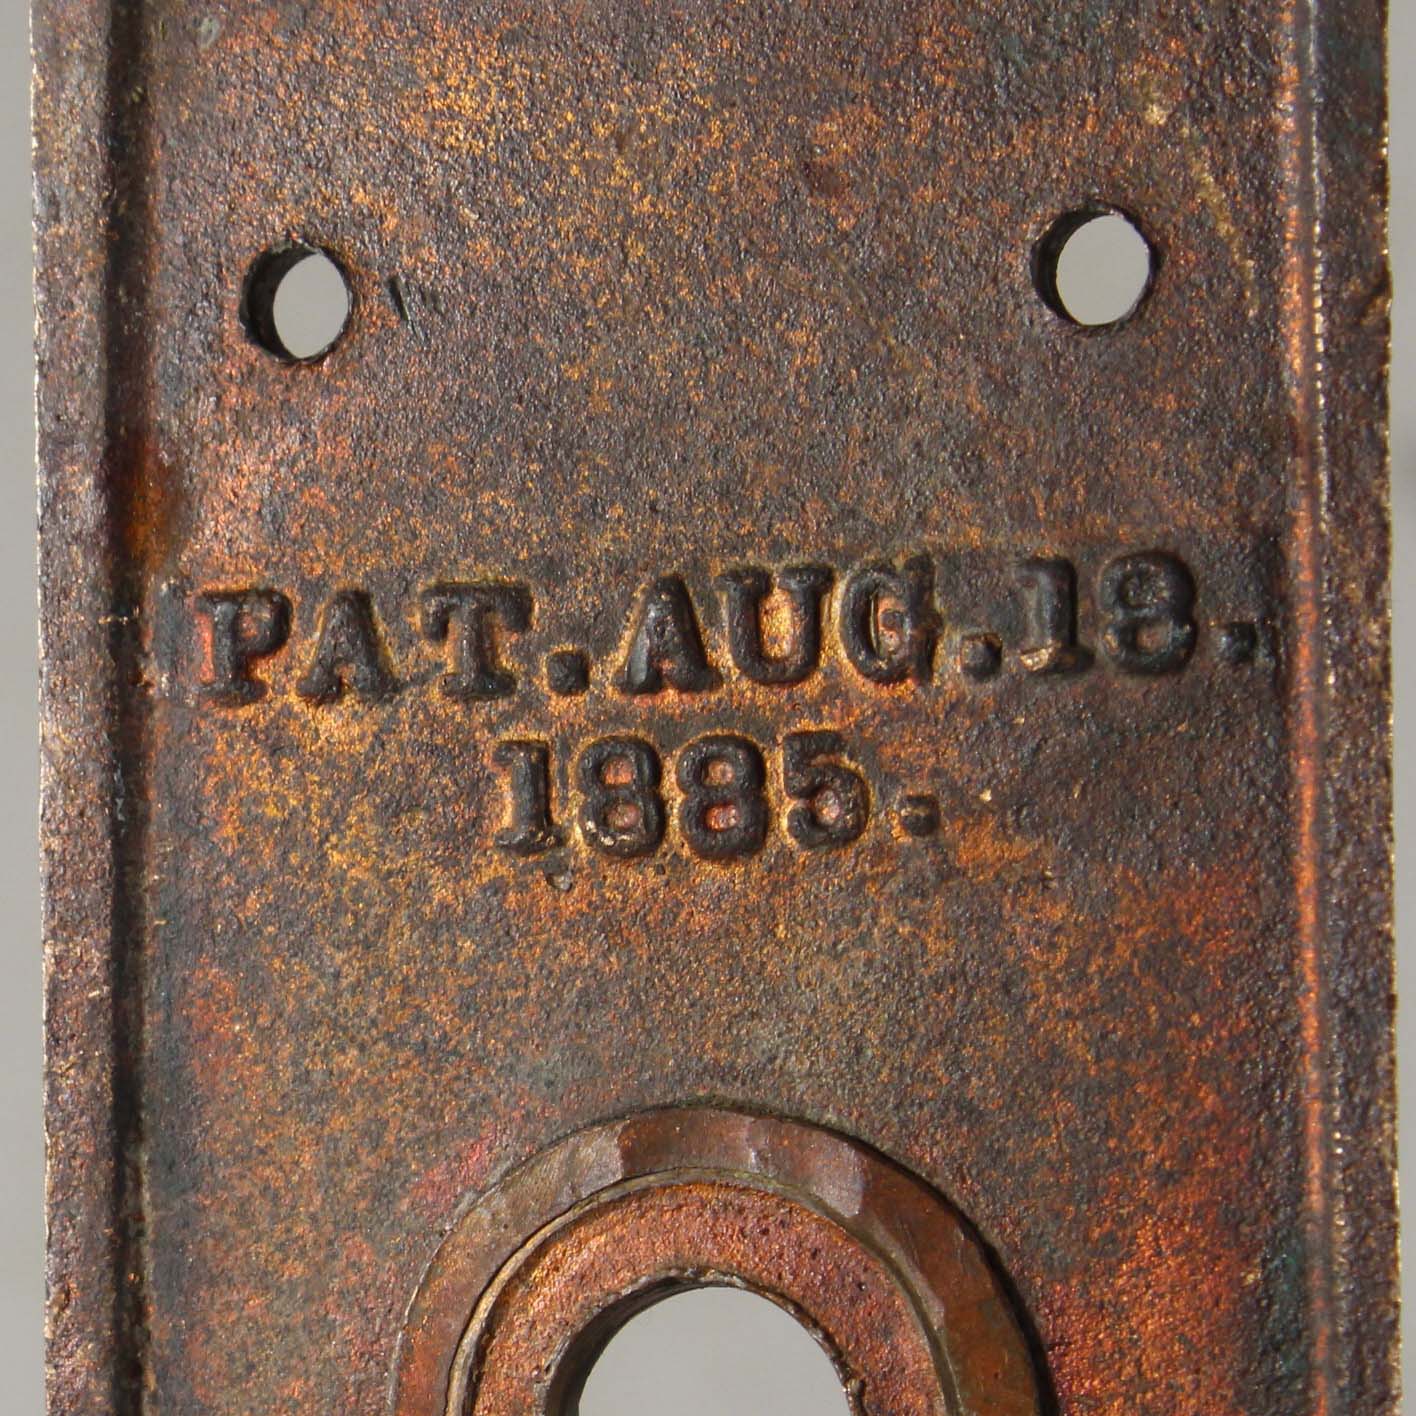 SOLD Antique Eastlake Door Hardware Set “Ekado” by Sargent-69728